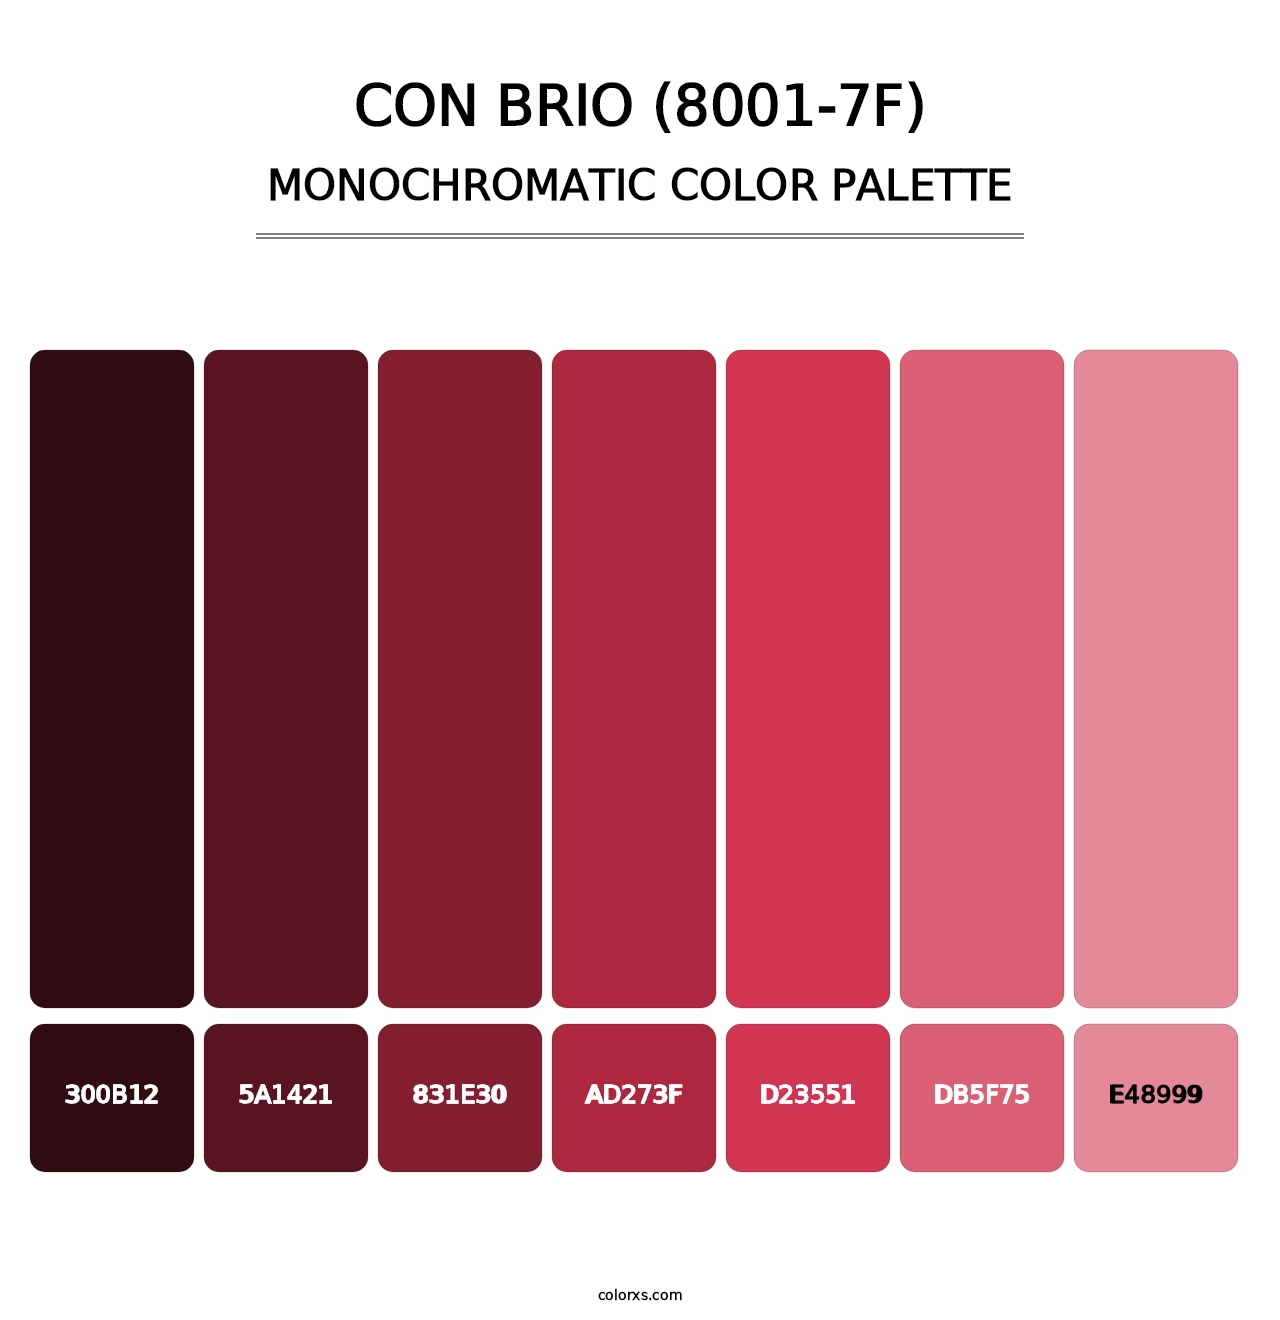 Con Brio (8001-7F) - Monochromatic Color Palette